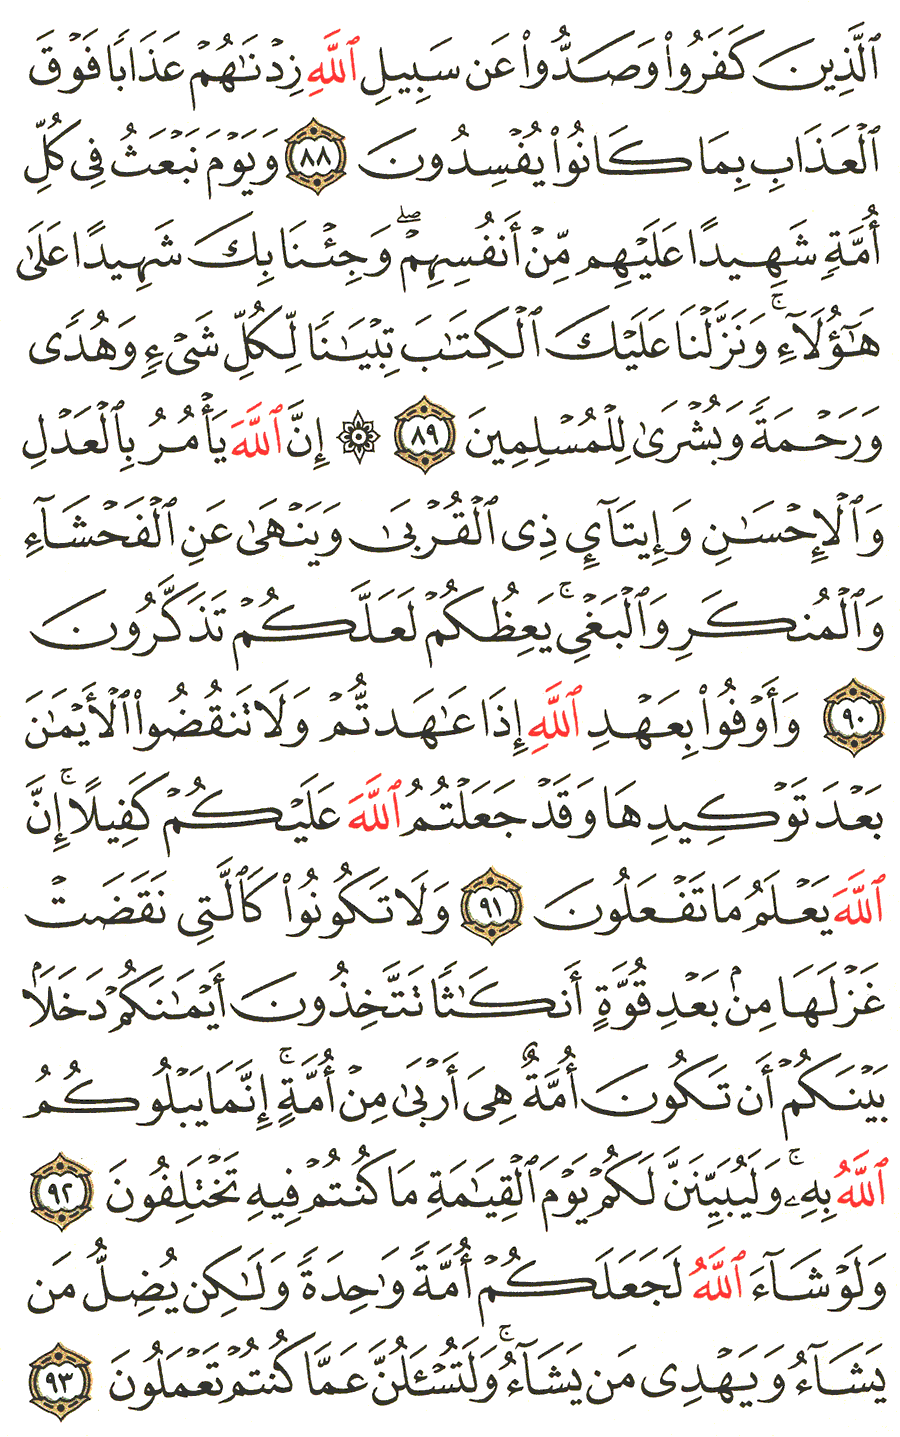 الصفحة رقم 277  من القرآن الكريم مكتوبة من المصحف